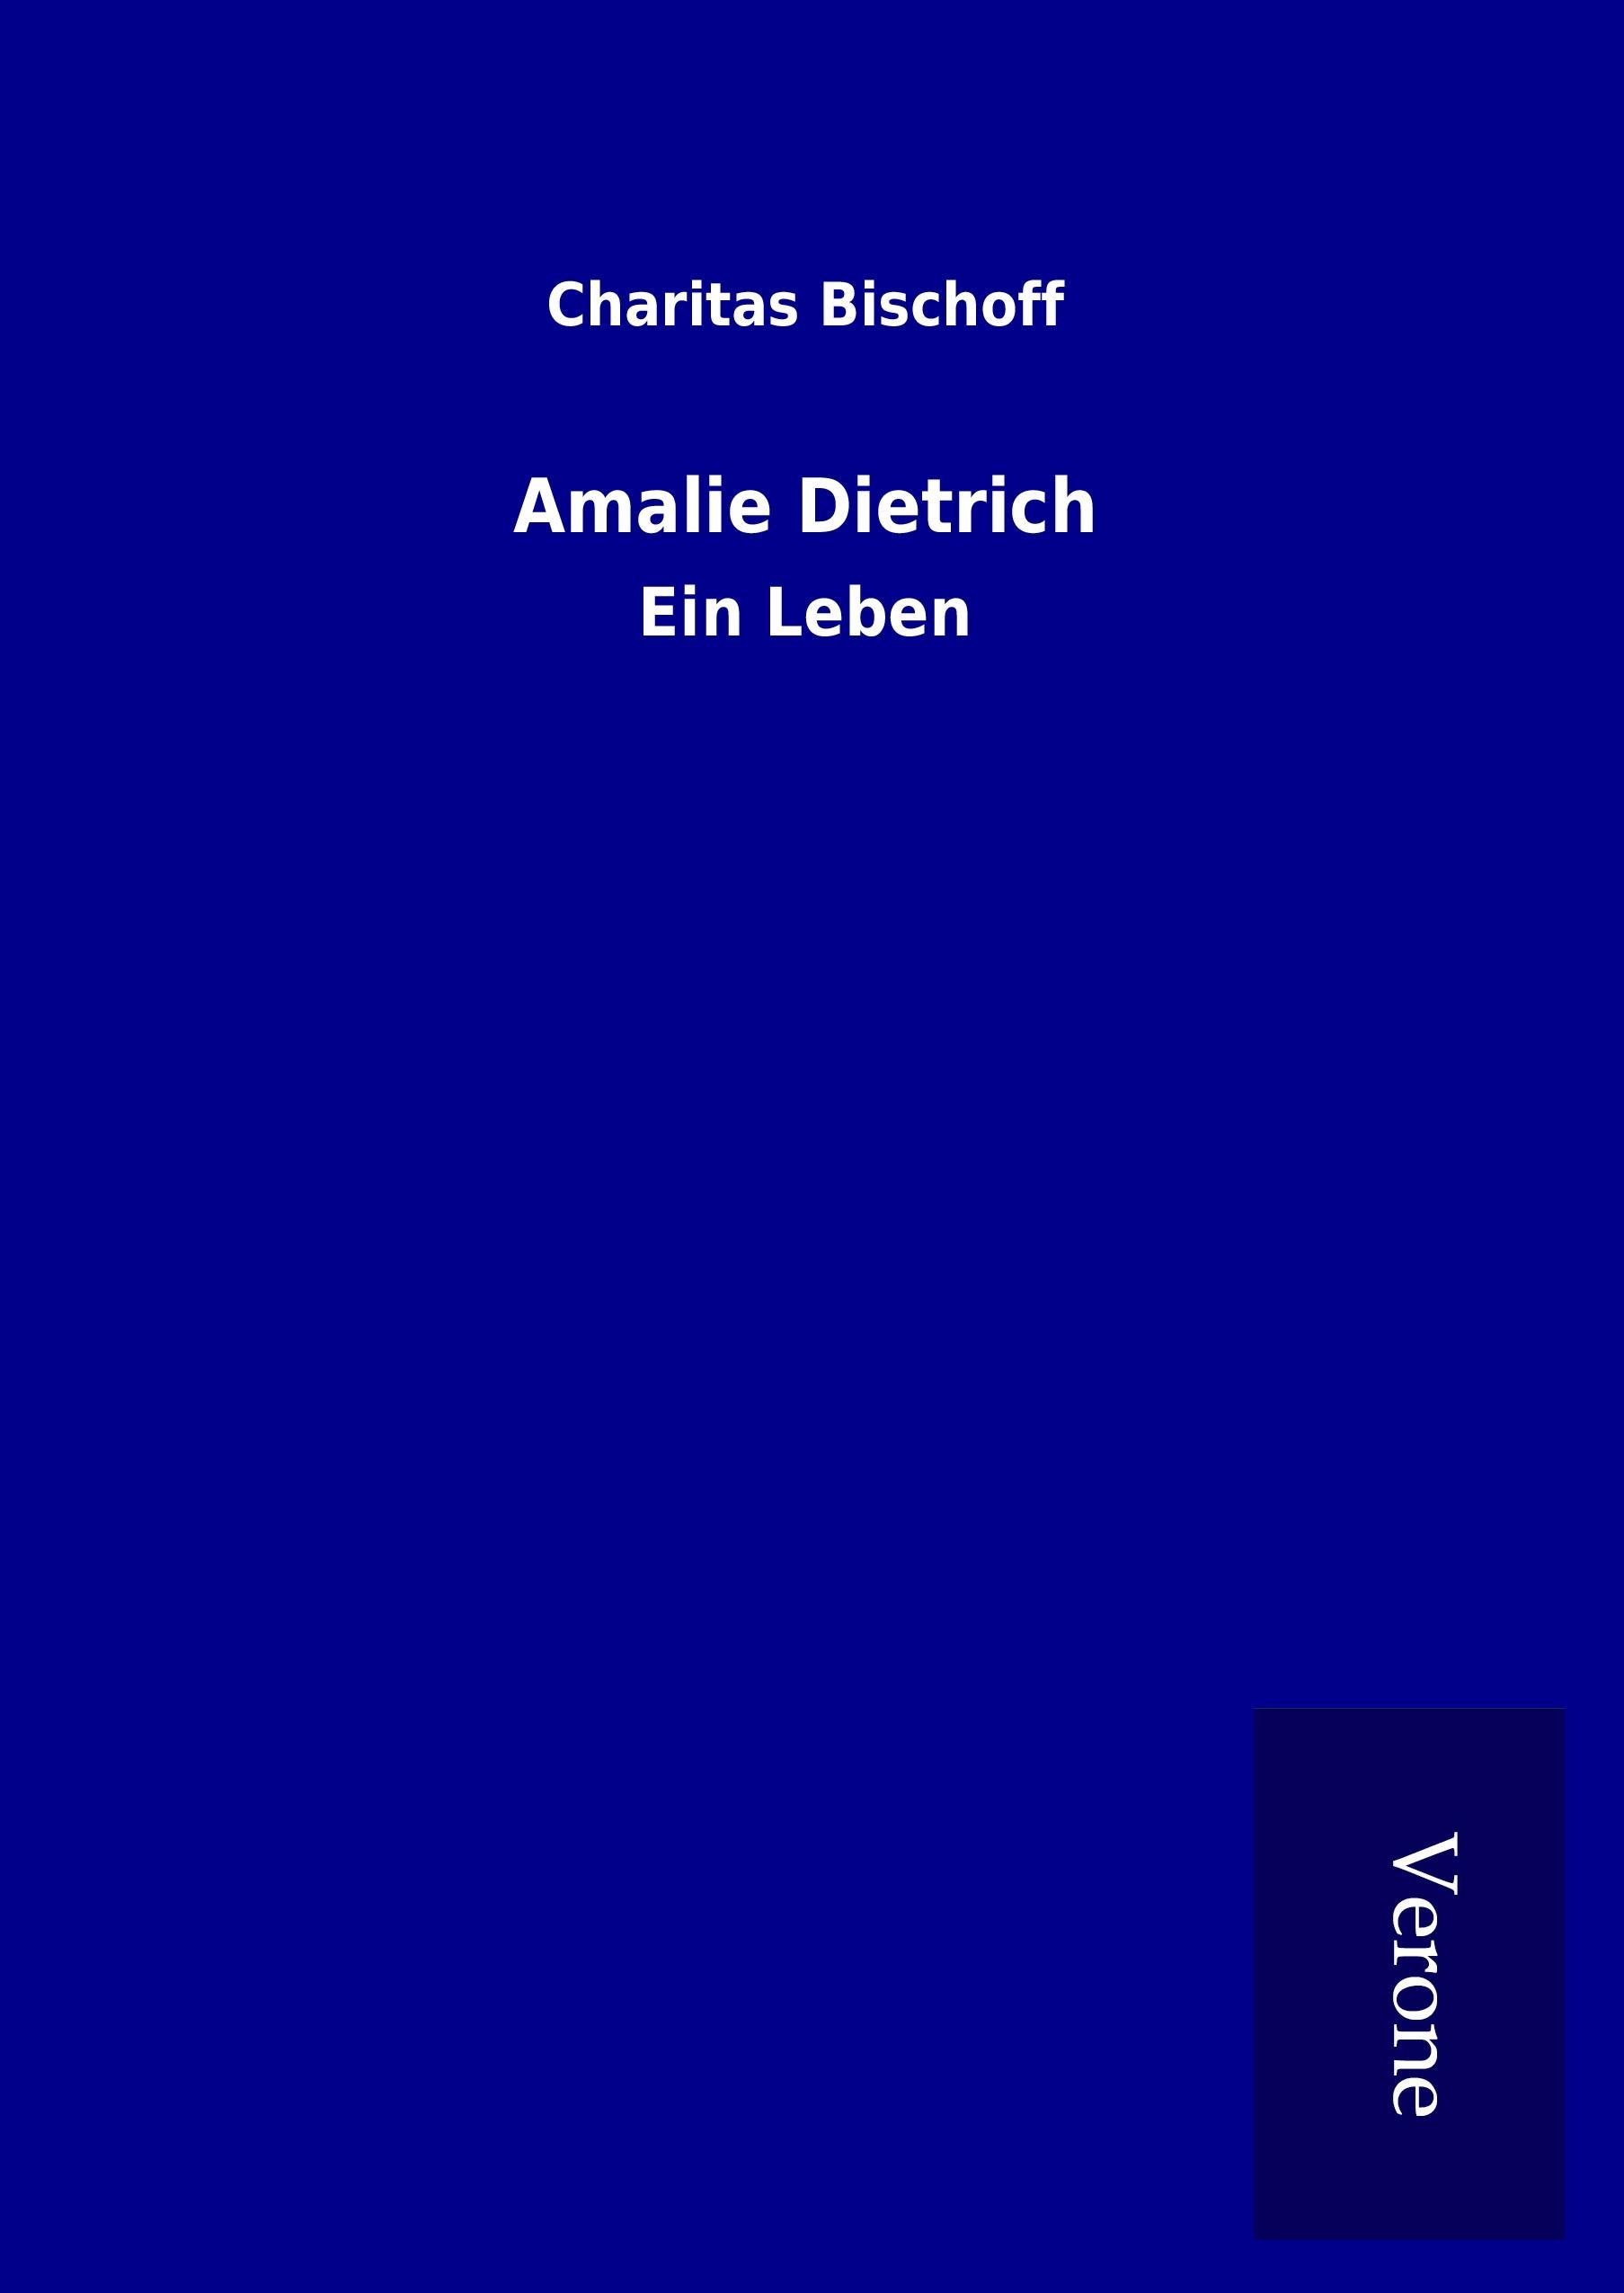 Amalie Dietrich / Ein Leben / Charitas Bischoff / Buch / HC gerader Rücken kaschiert / 460 S. / Deutsch / 2017 / TP Verone Publishing / EAN 9789925076512 - Bischoff, Charitas